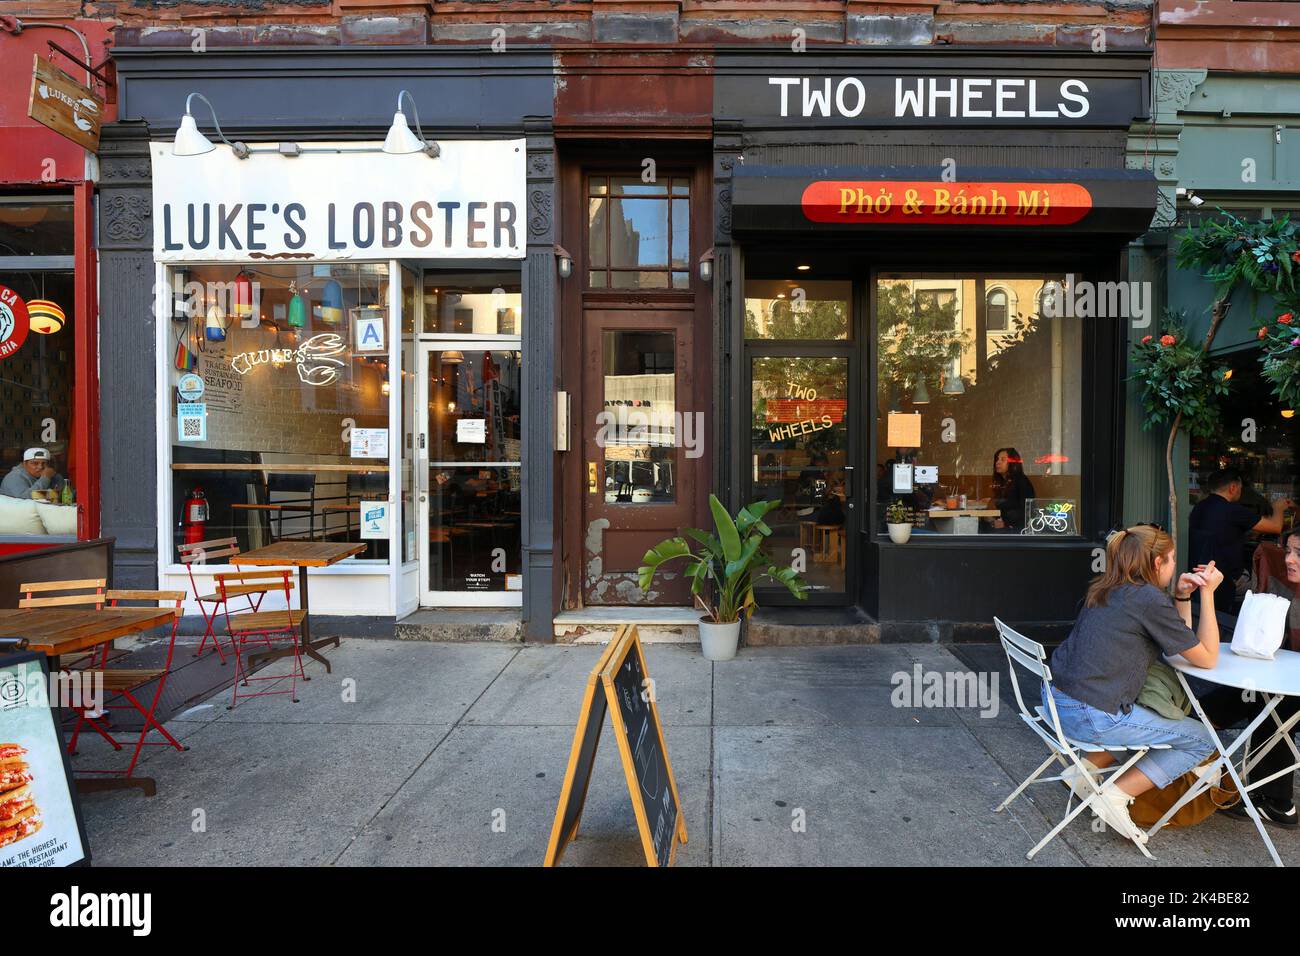 Luke's Lobster, Two Wheels, 426 Amsterdam Ave, New York, foto di un ristorante vietnamita nell'Upper West Side di Manhattan Foto Stock